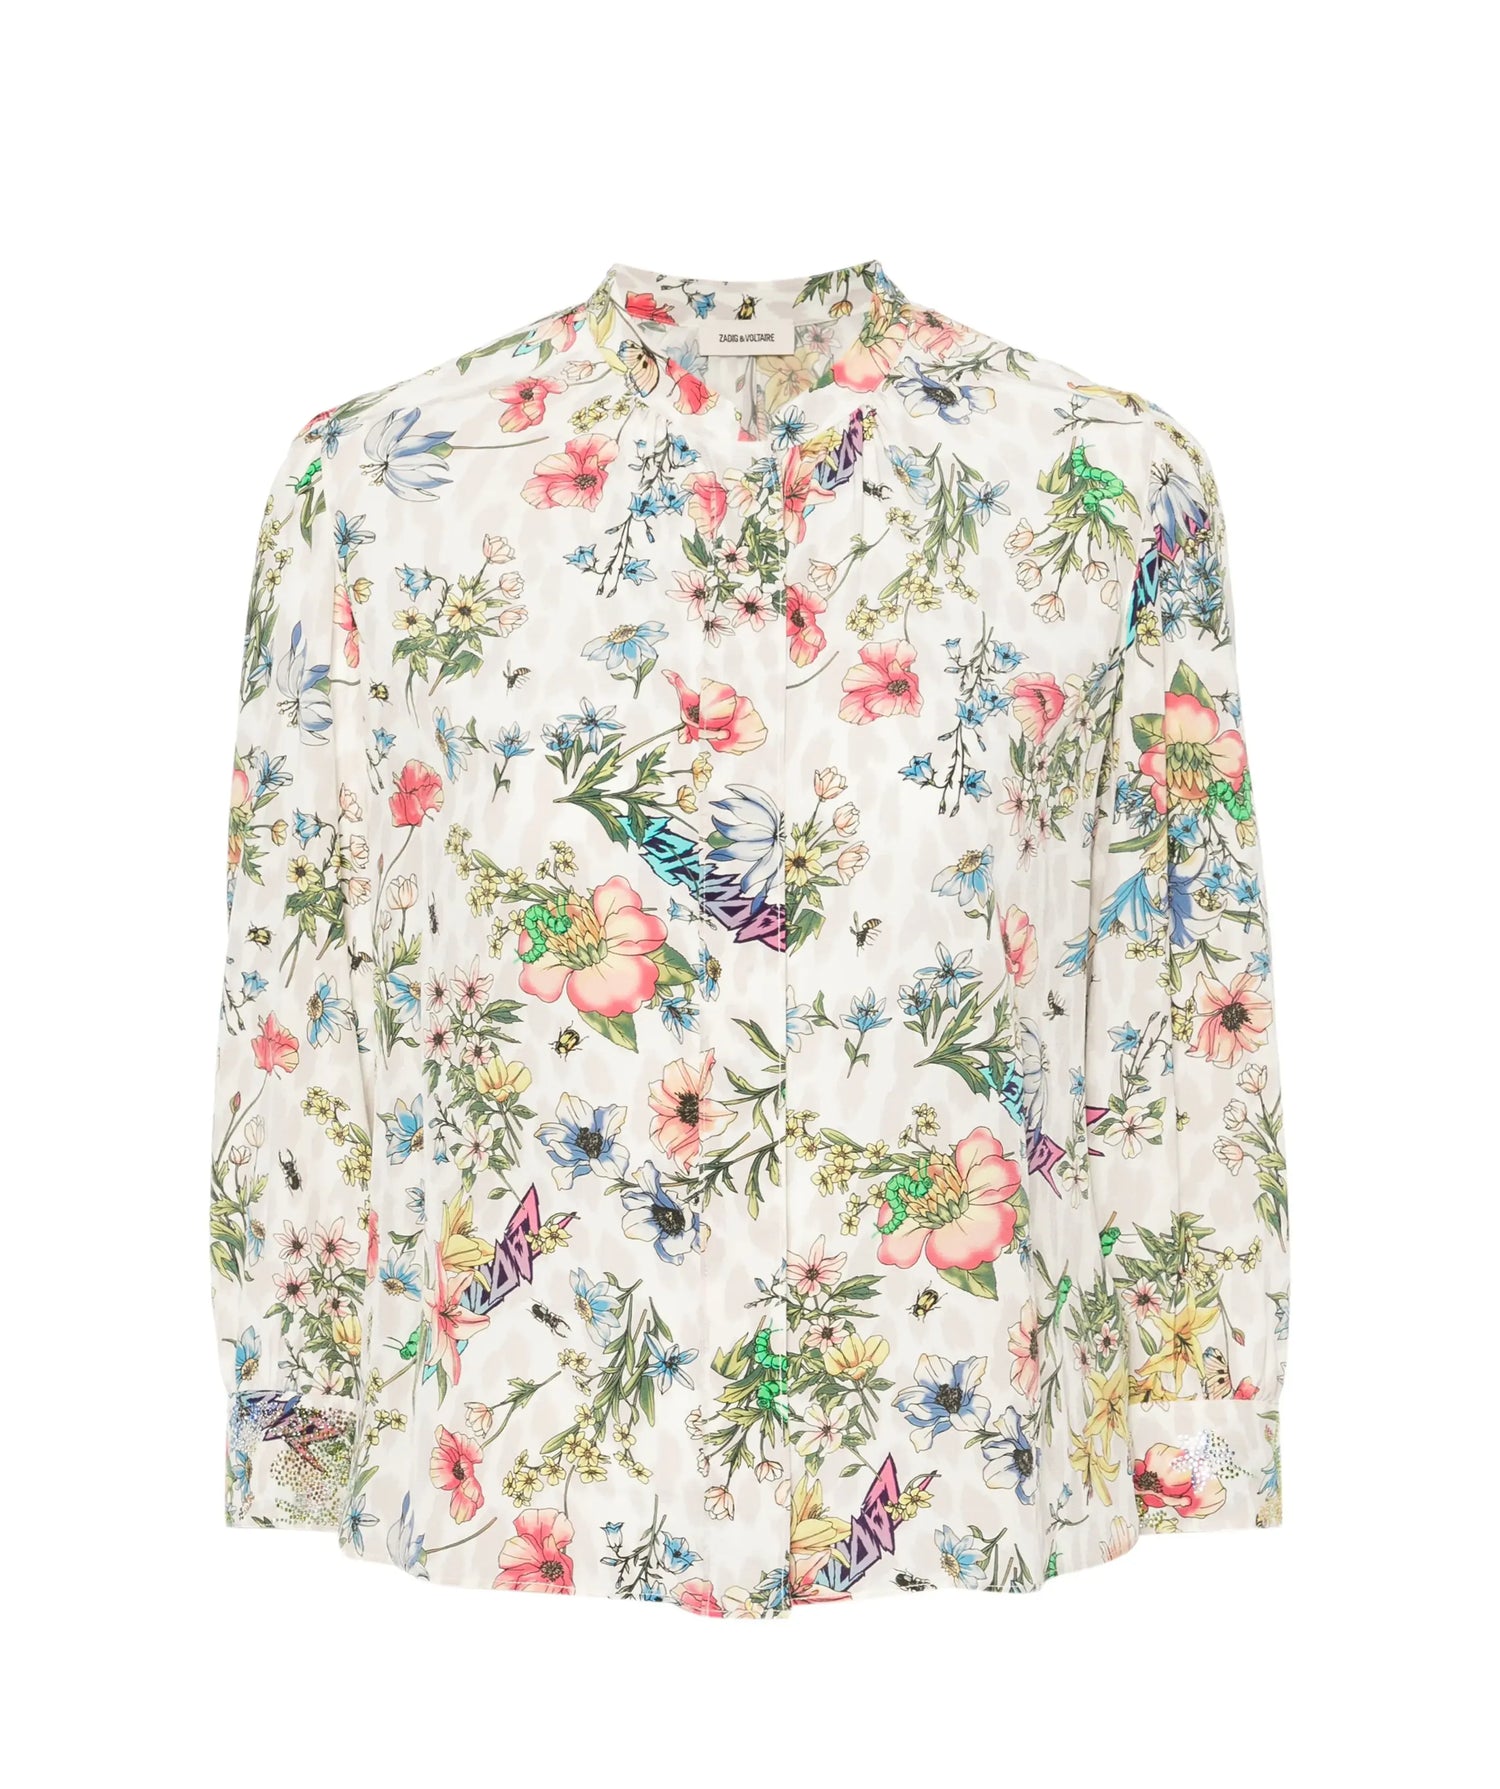 TADEO TWISTED GARDEN print silk blouse, vanille